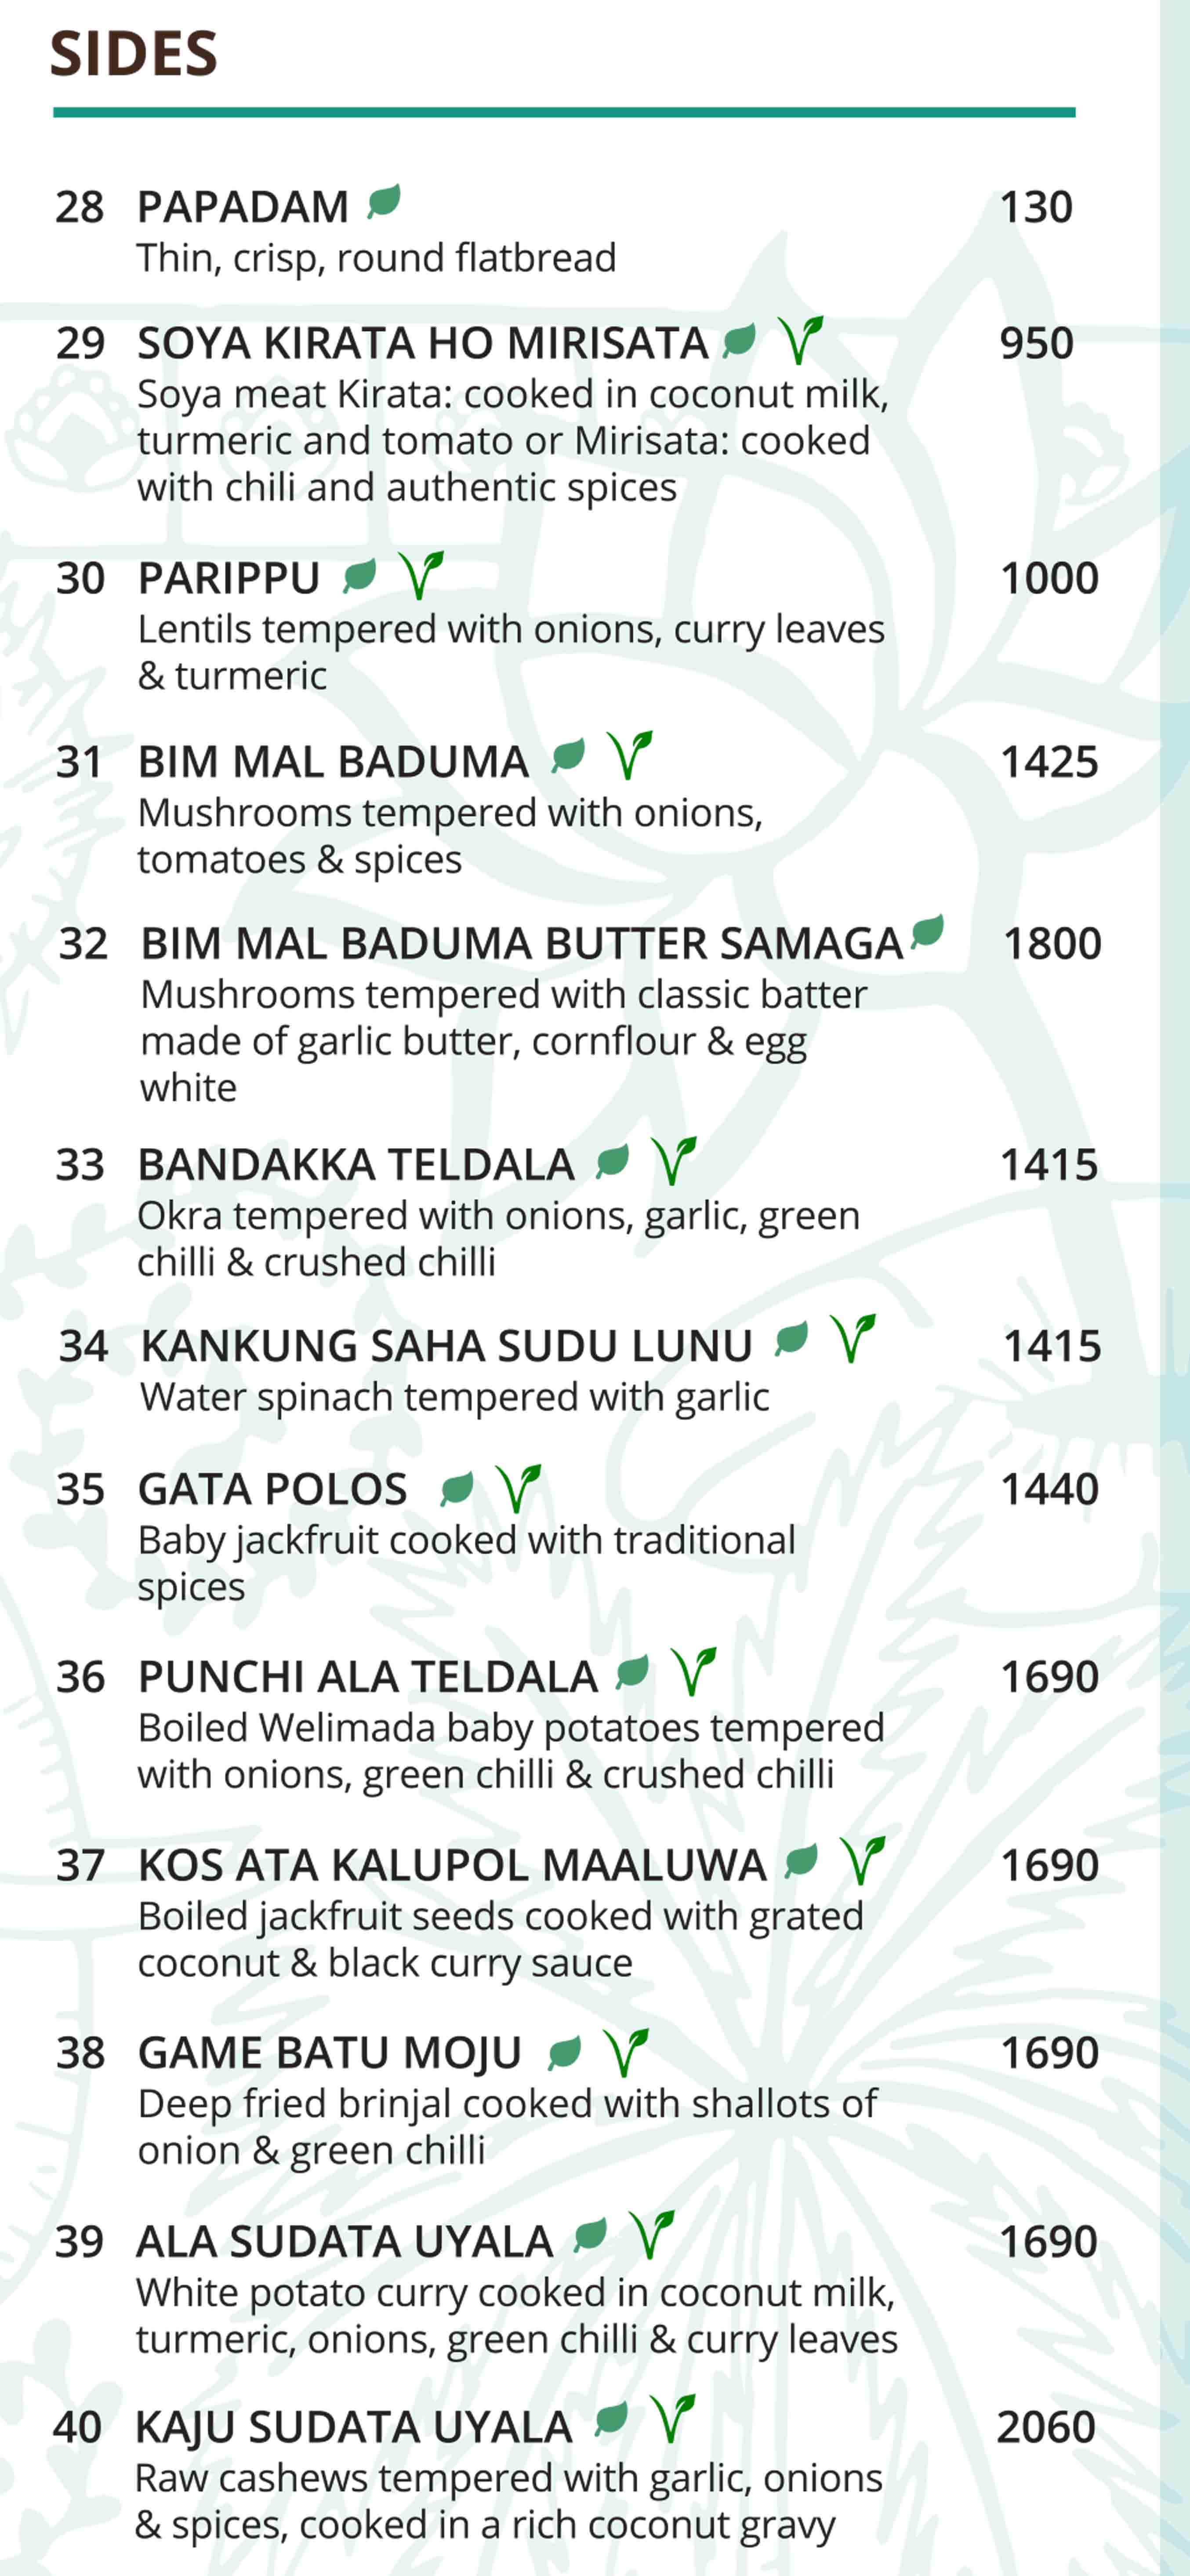 Upali’s by Nawaloka menu